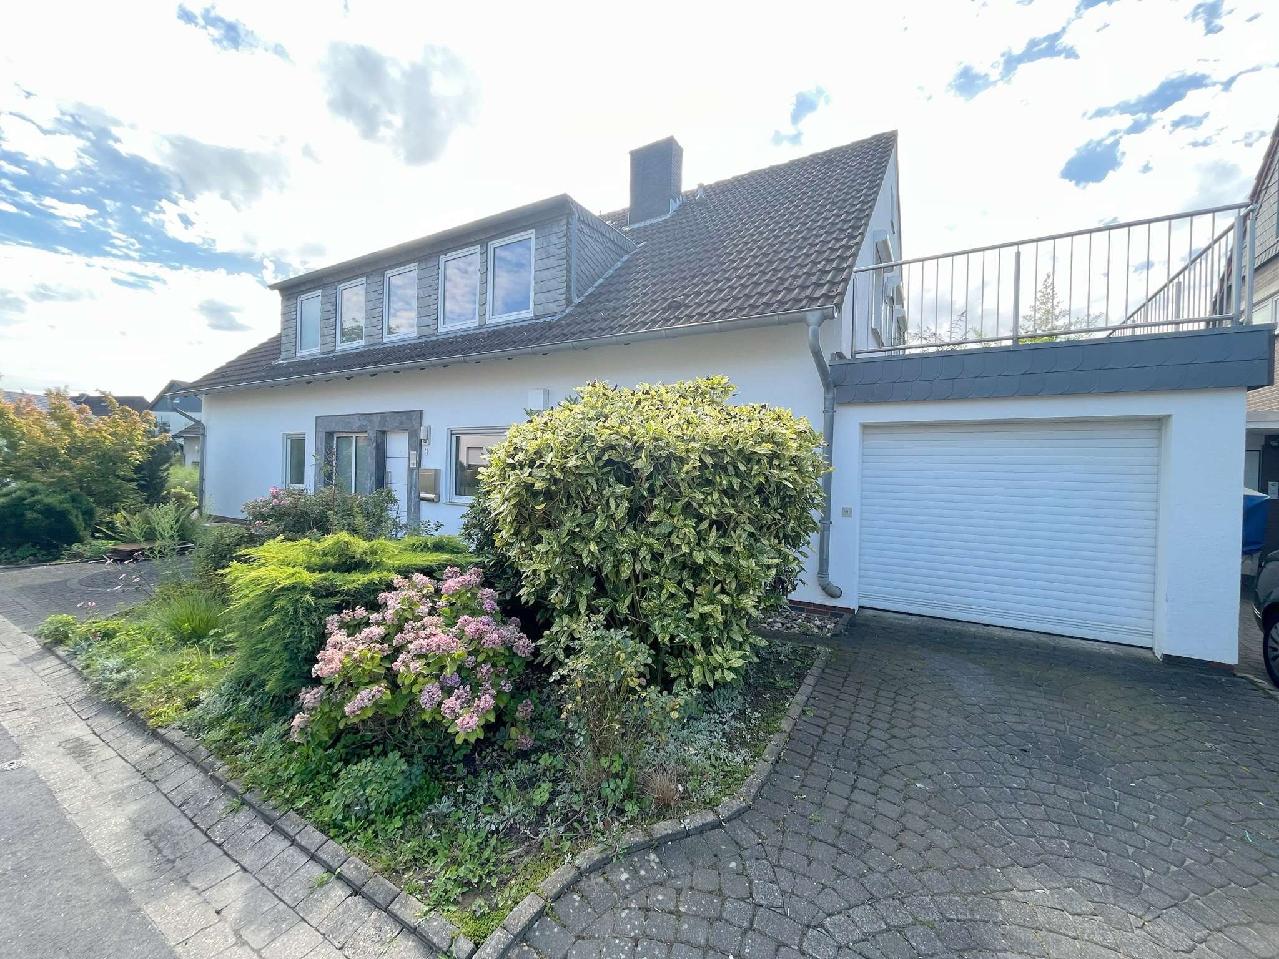 Verkauft! Freistehendes Zweifamilienhaus mit 2 Garagen und Garten mit Süd-Ausrichtung in Kaarst-Büttgen